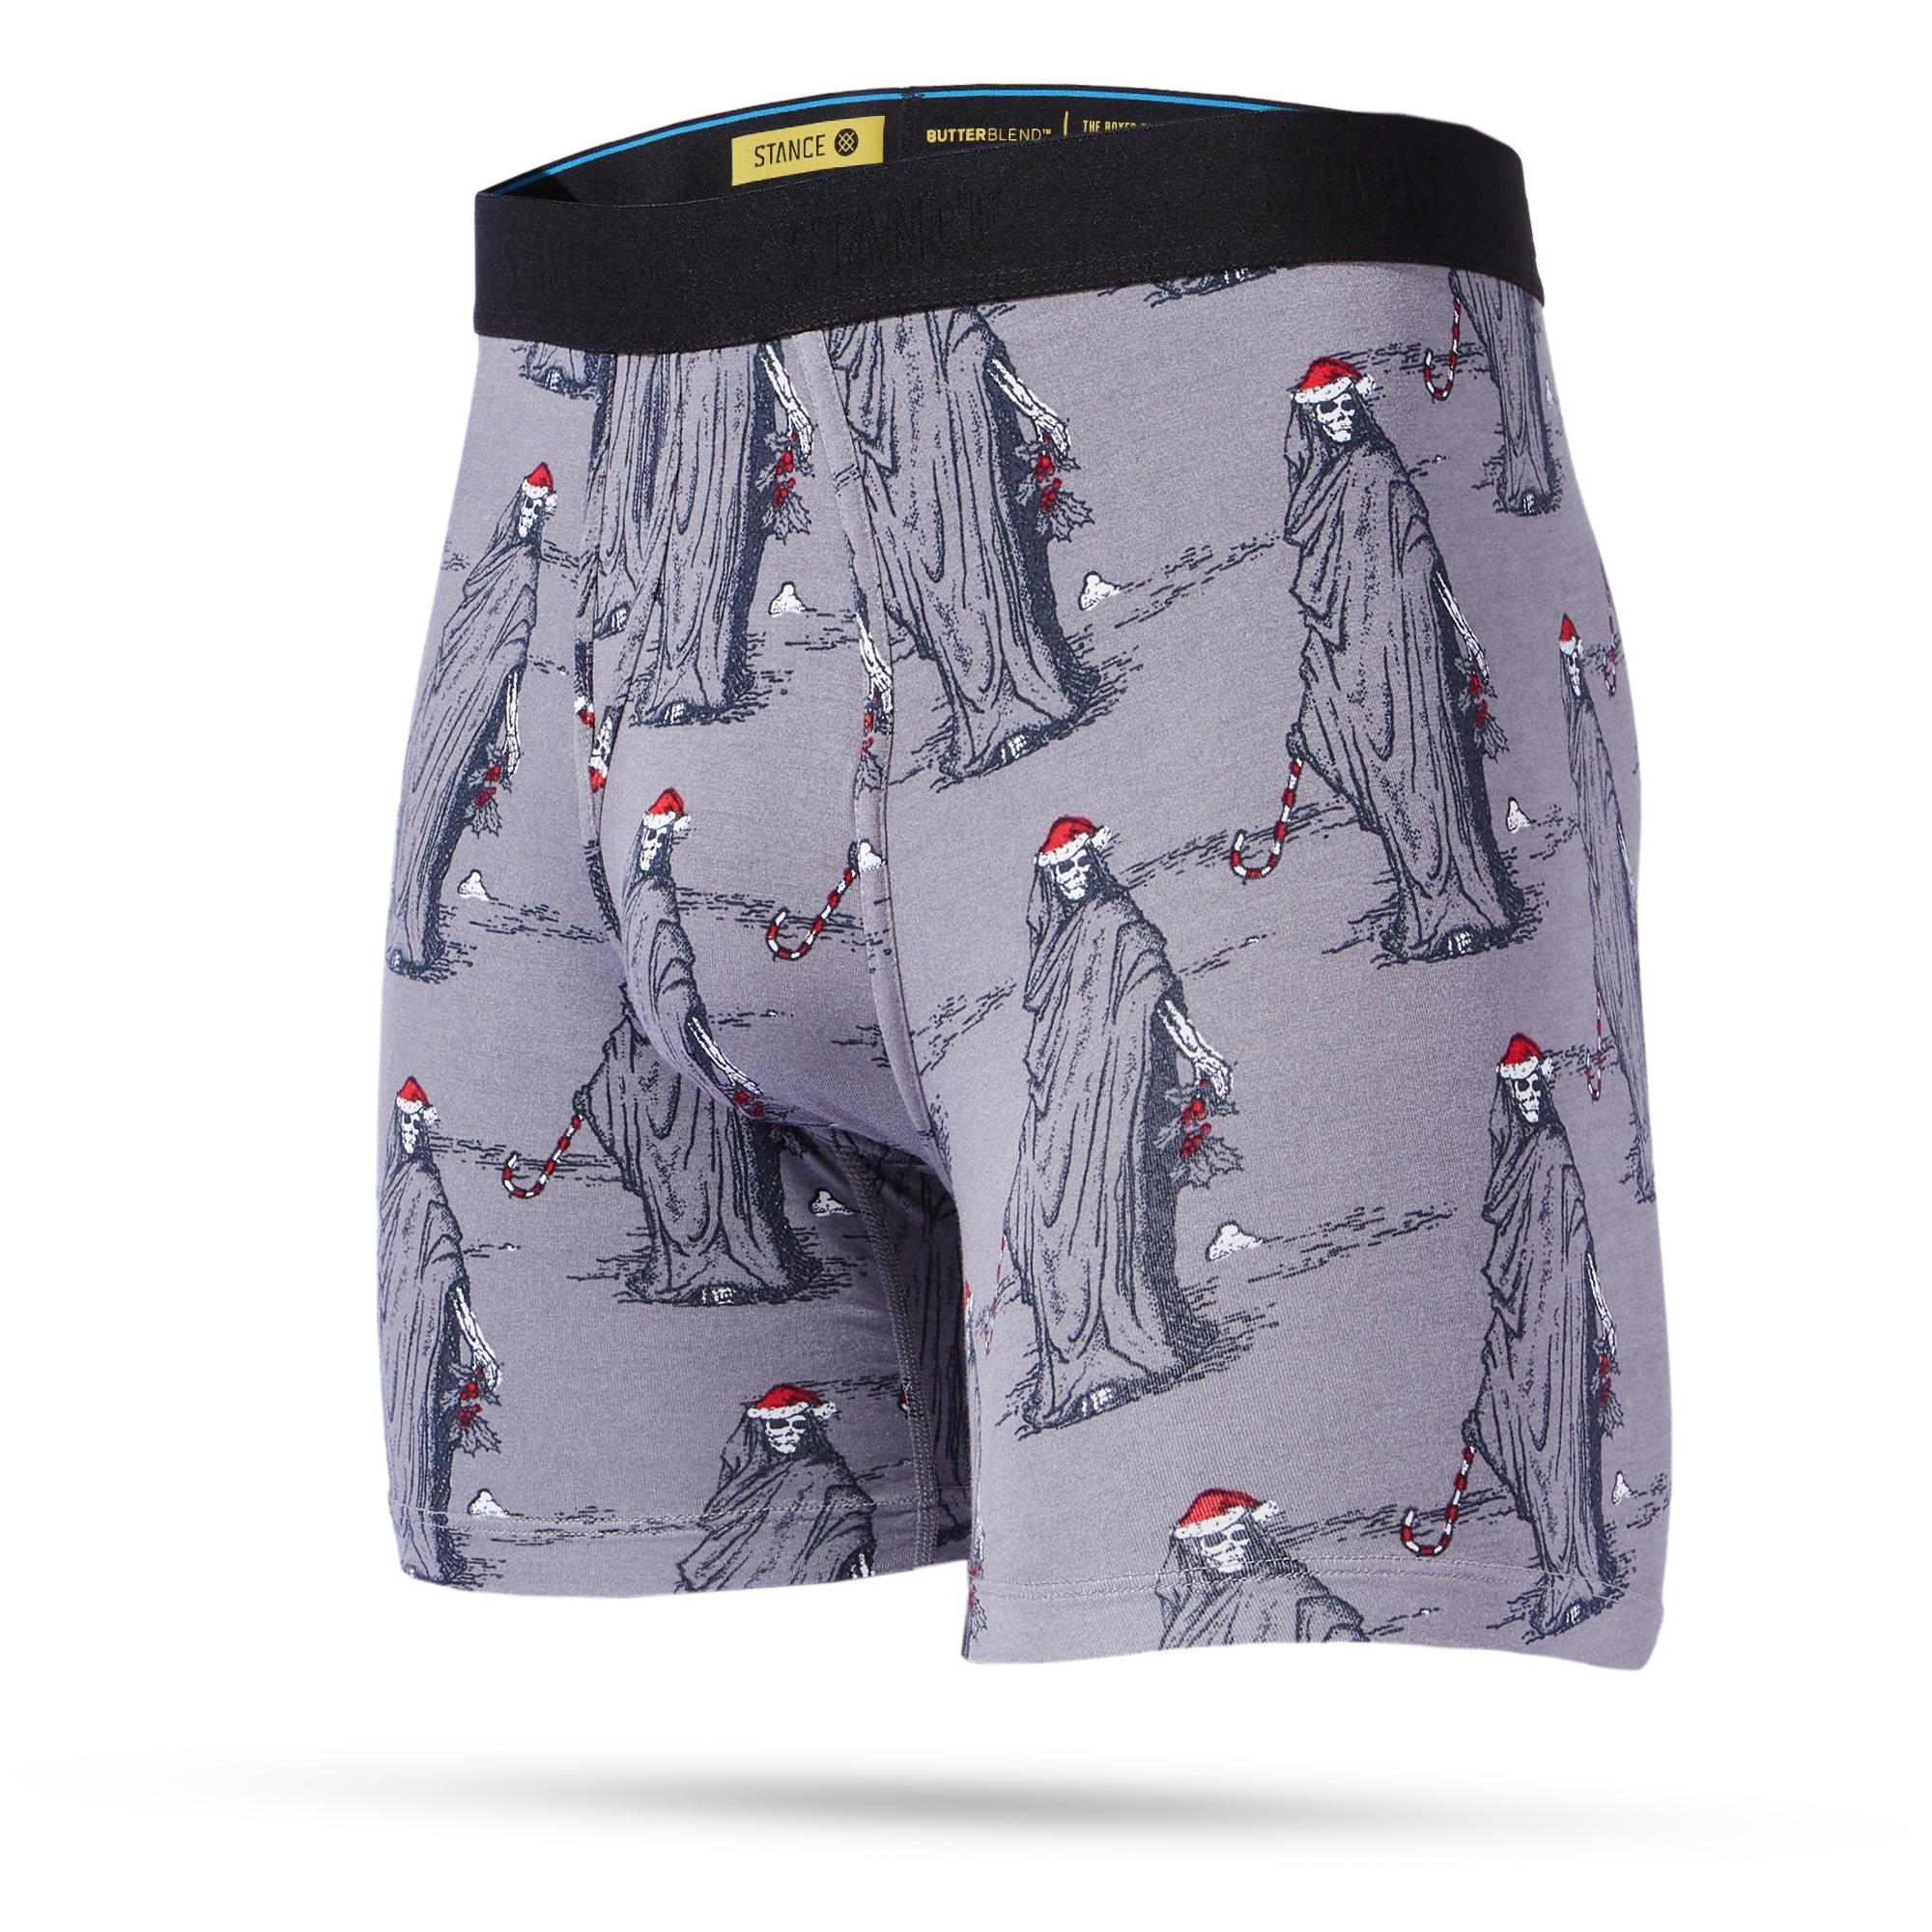 Men's Stance Underwear The Boxer Brief Cotton Blend 'Mylo' Stripes